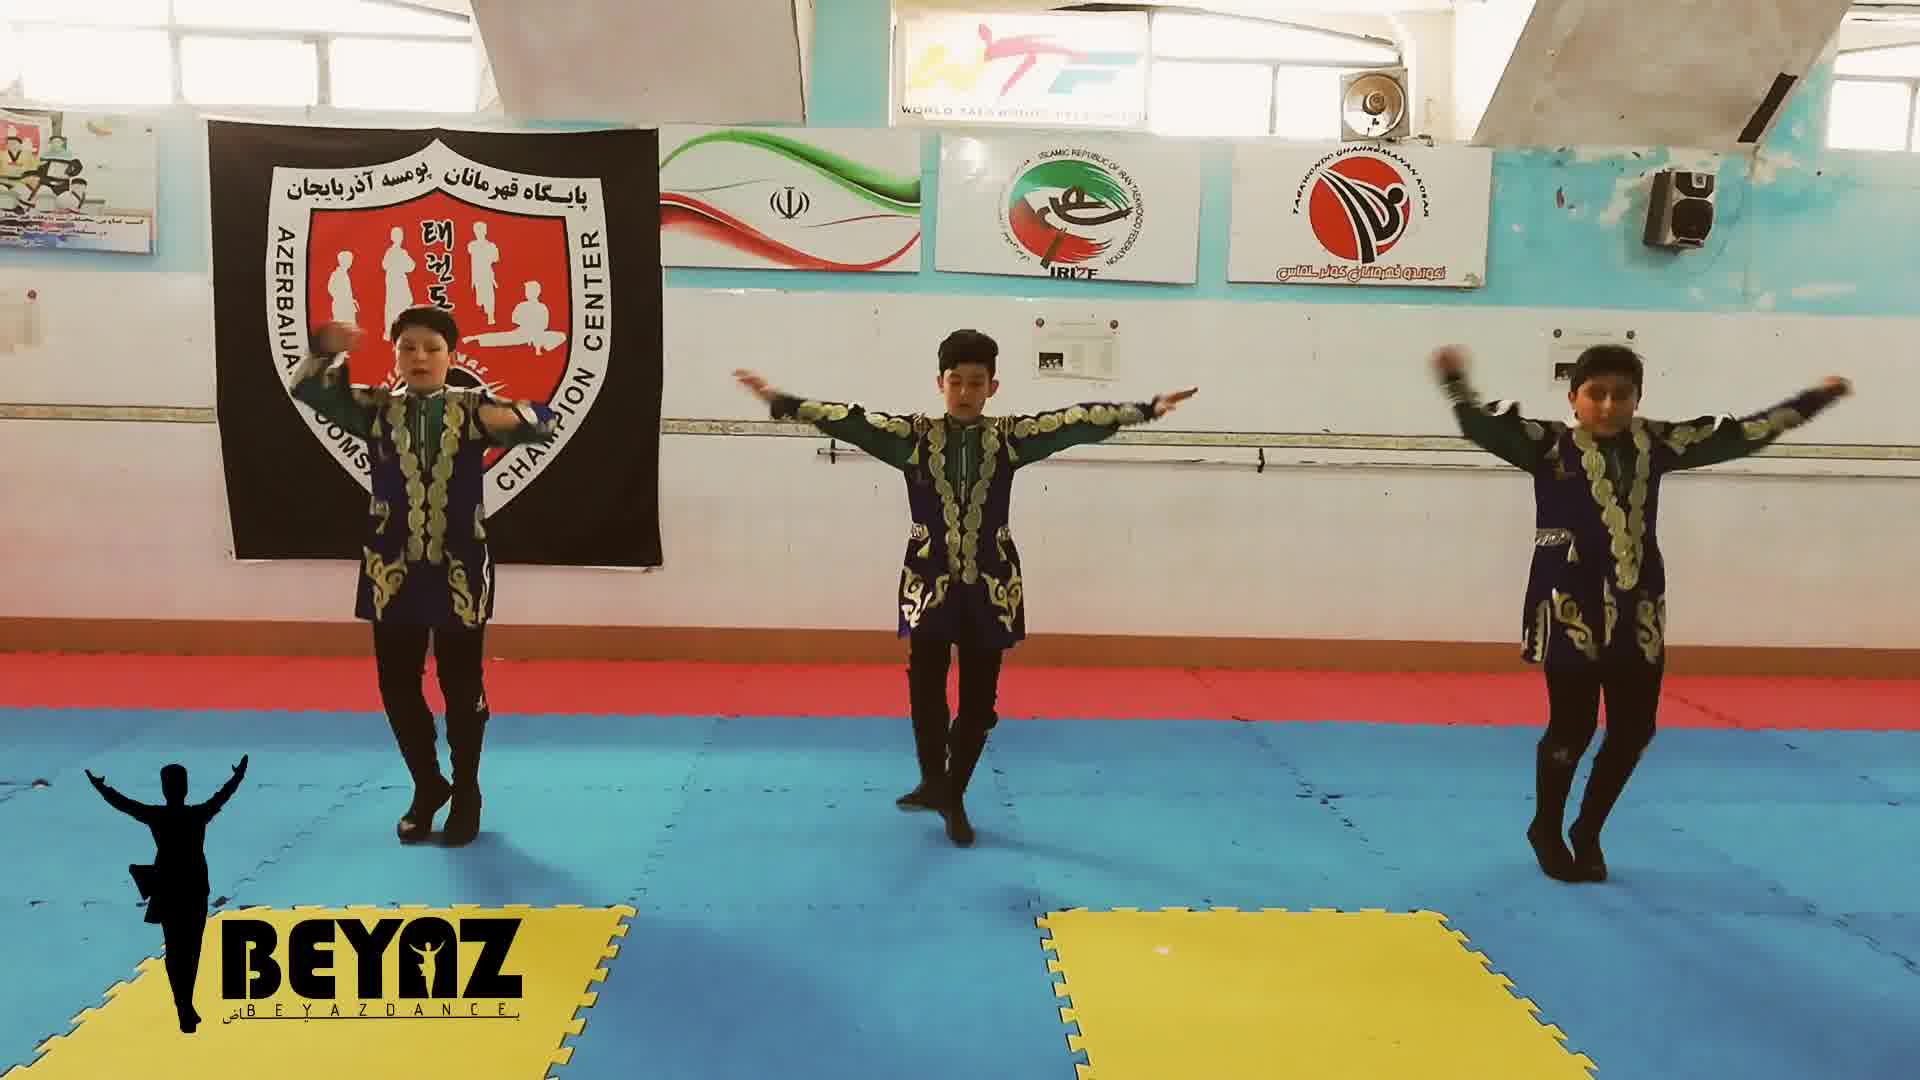 آموزش رقص آذری برای کودکان توسط گروه بیاض